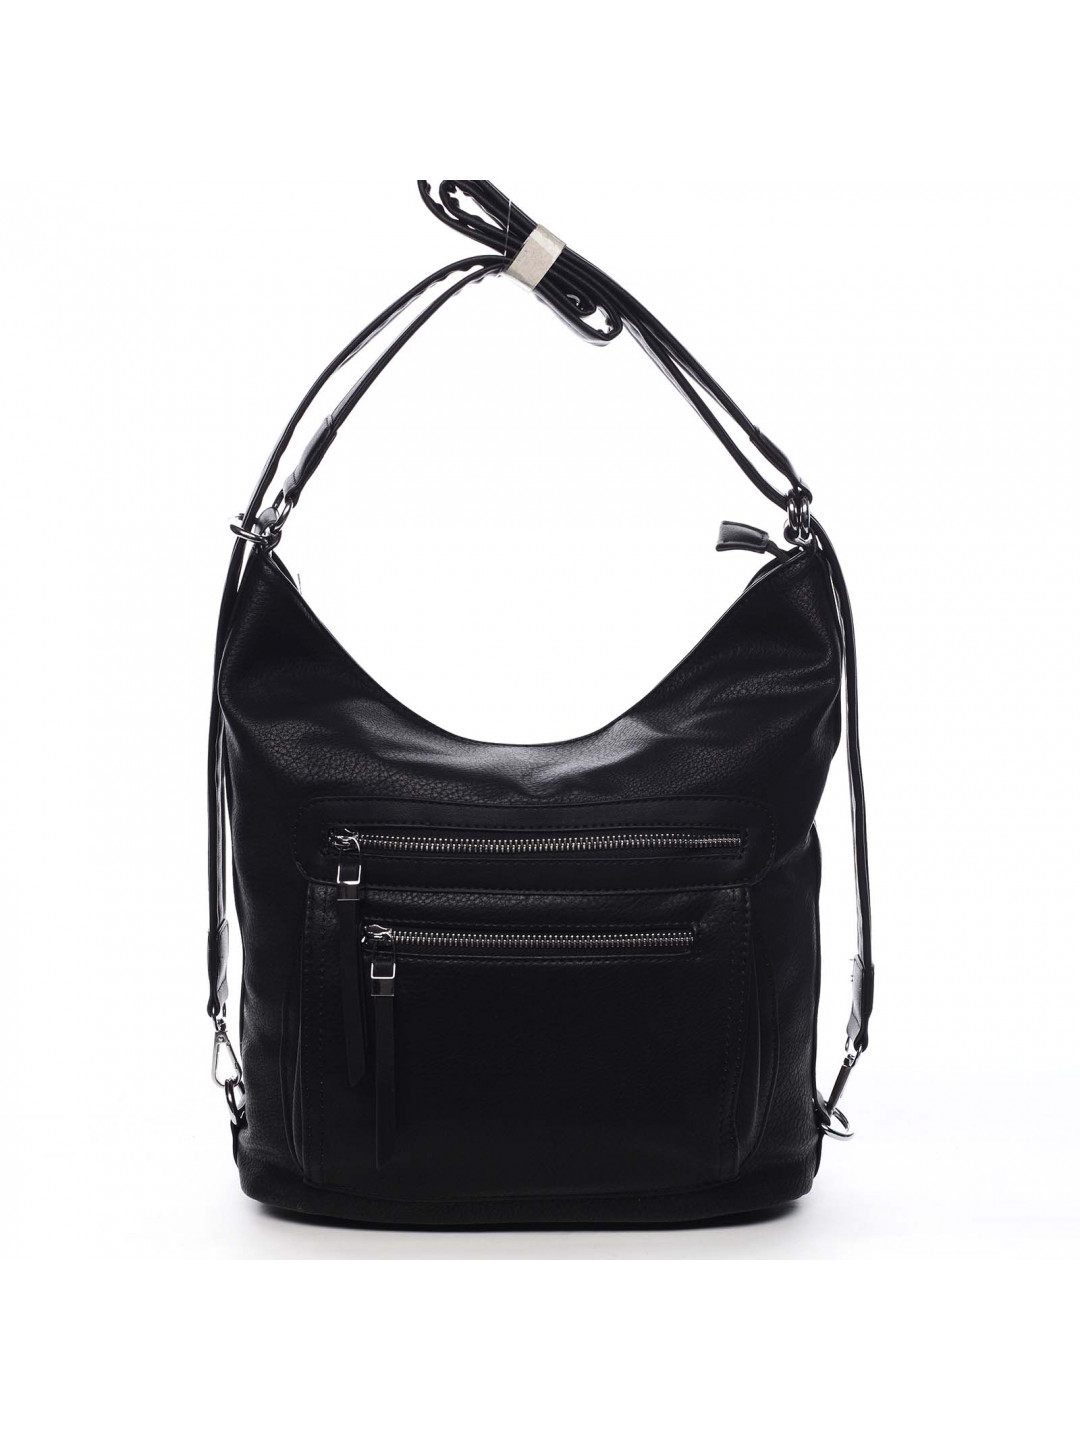 Dámský kabelko batoh černá – Romina & Co Bags Jaylyn